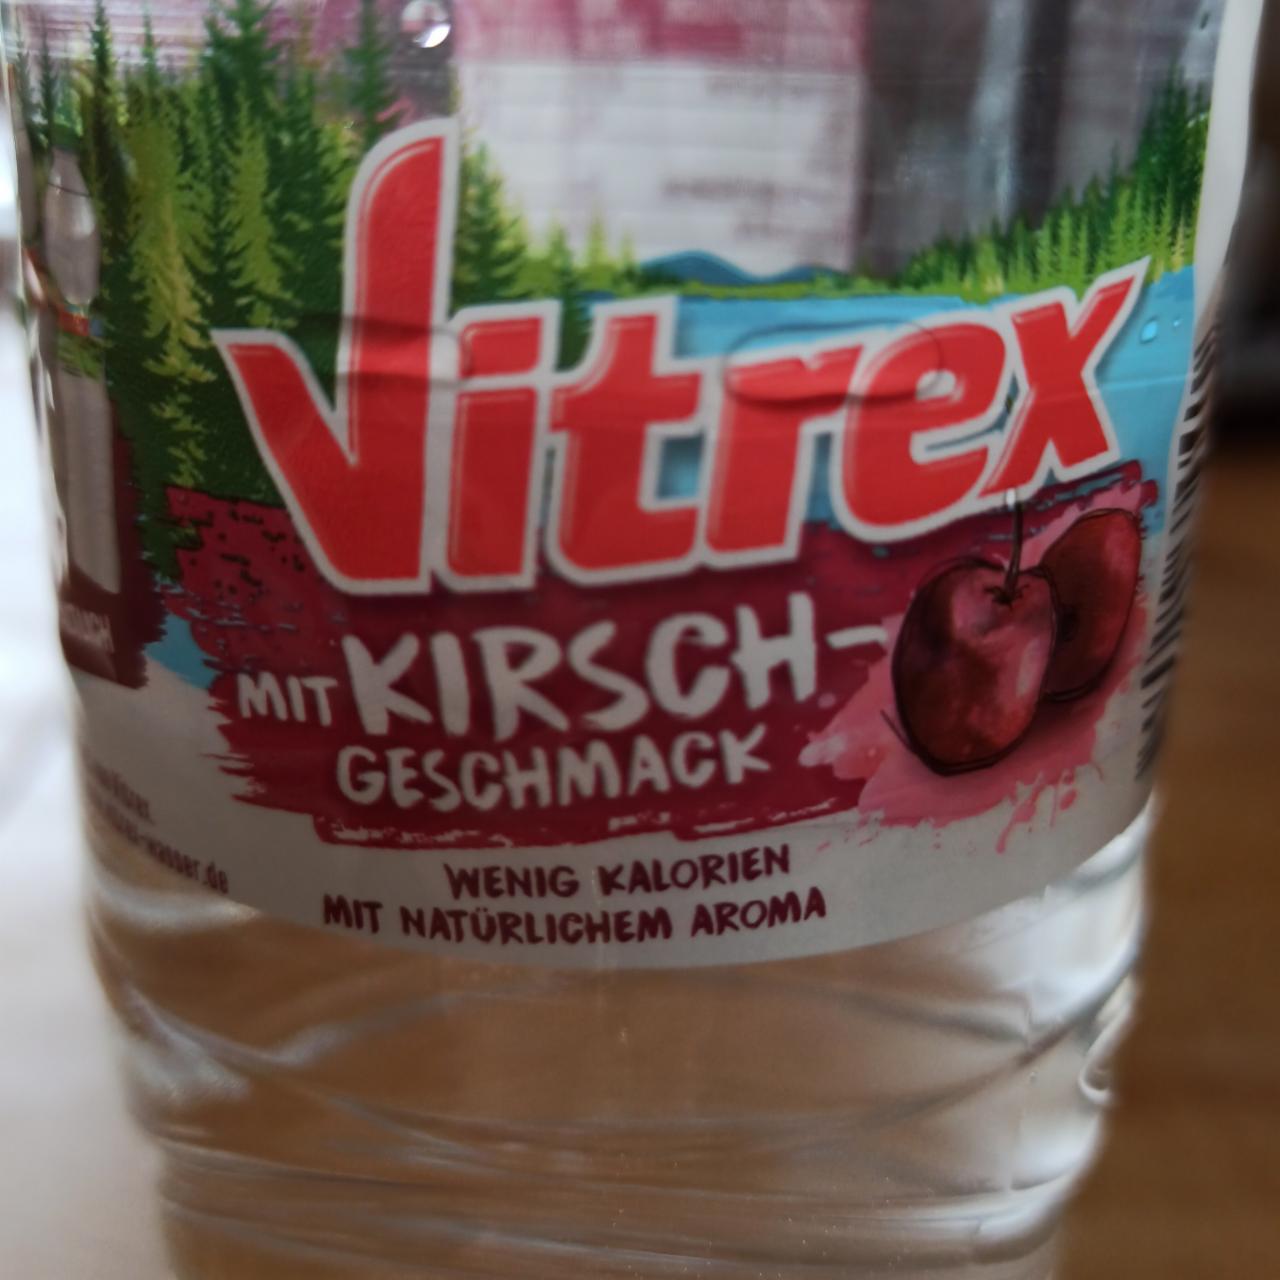 Fotografie - Erfrischungsgetränk aus Quellwasser mit Kirsch-Geschmack Vitrex